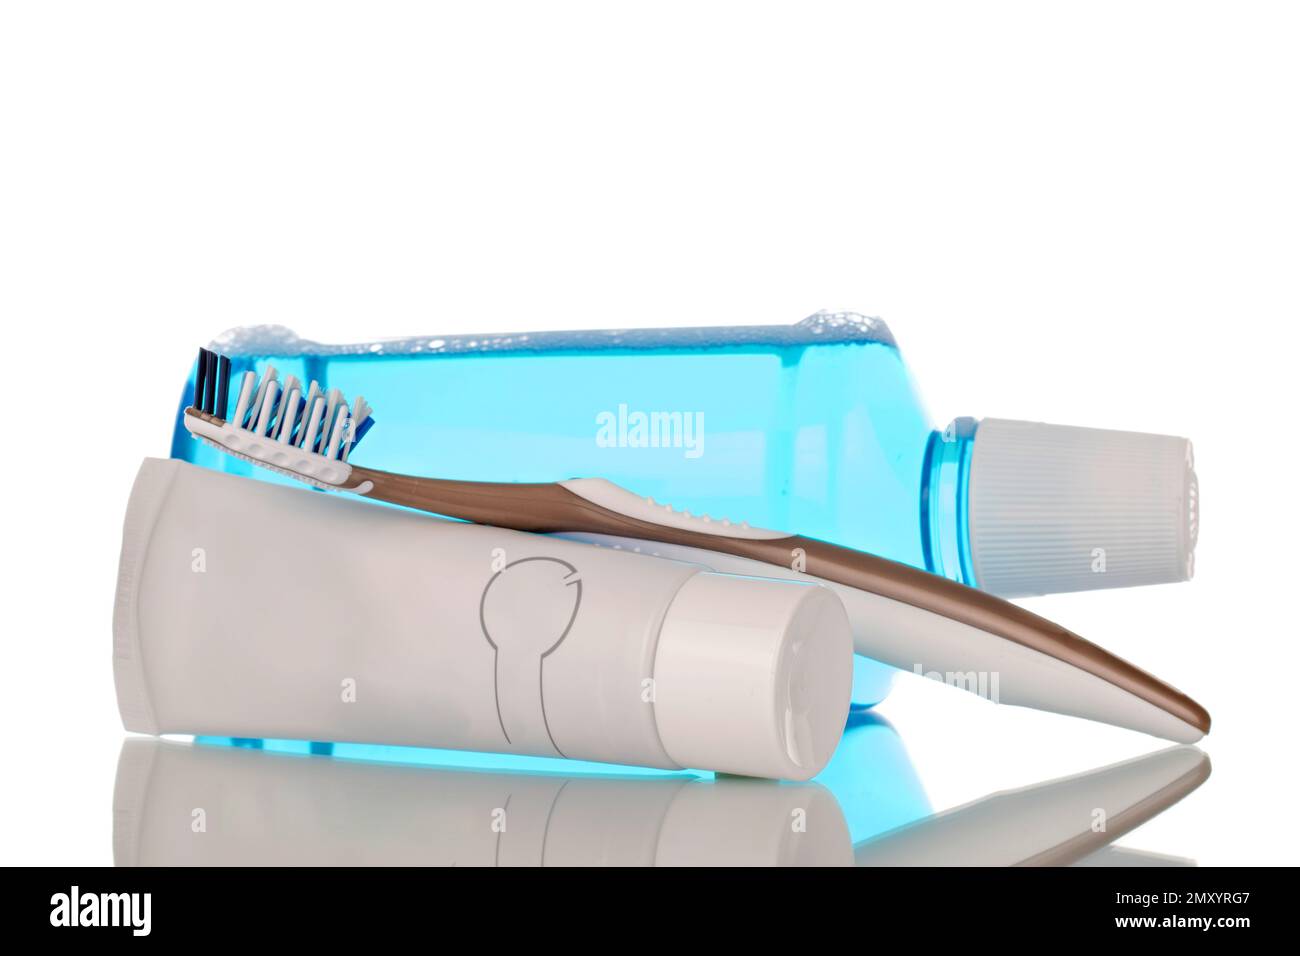 Mundpflegeprodukte, eine Flasche Mundwasser, Zahnpasta und Zahnbürste, Makroisolierung auf weißem Hintergrund. Stockfoto